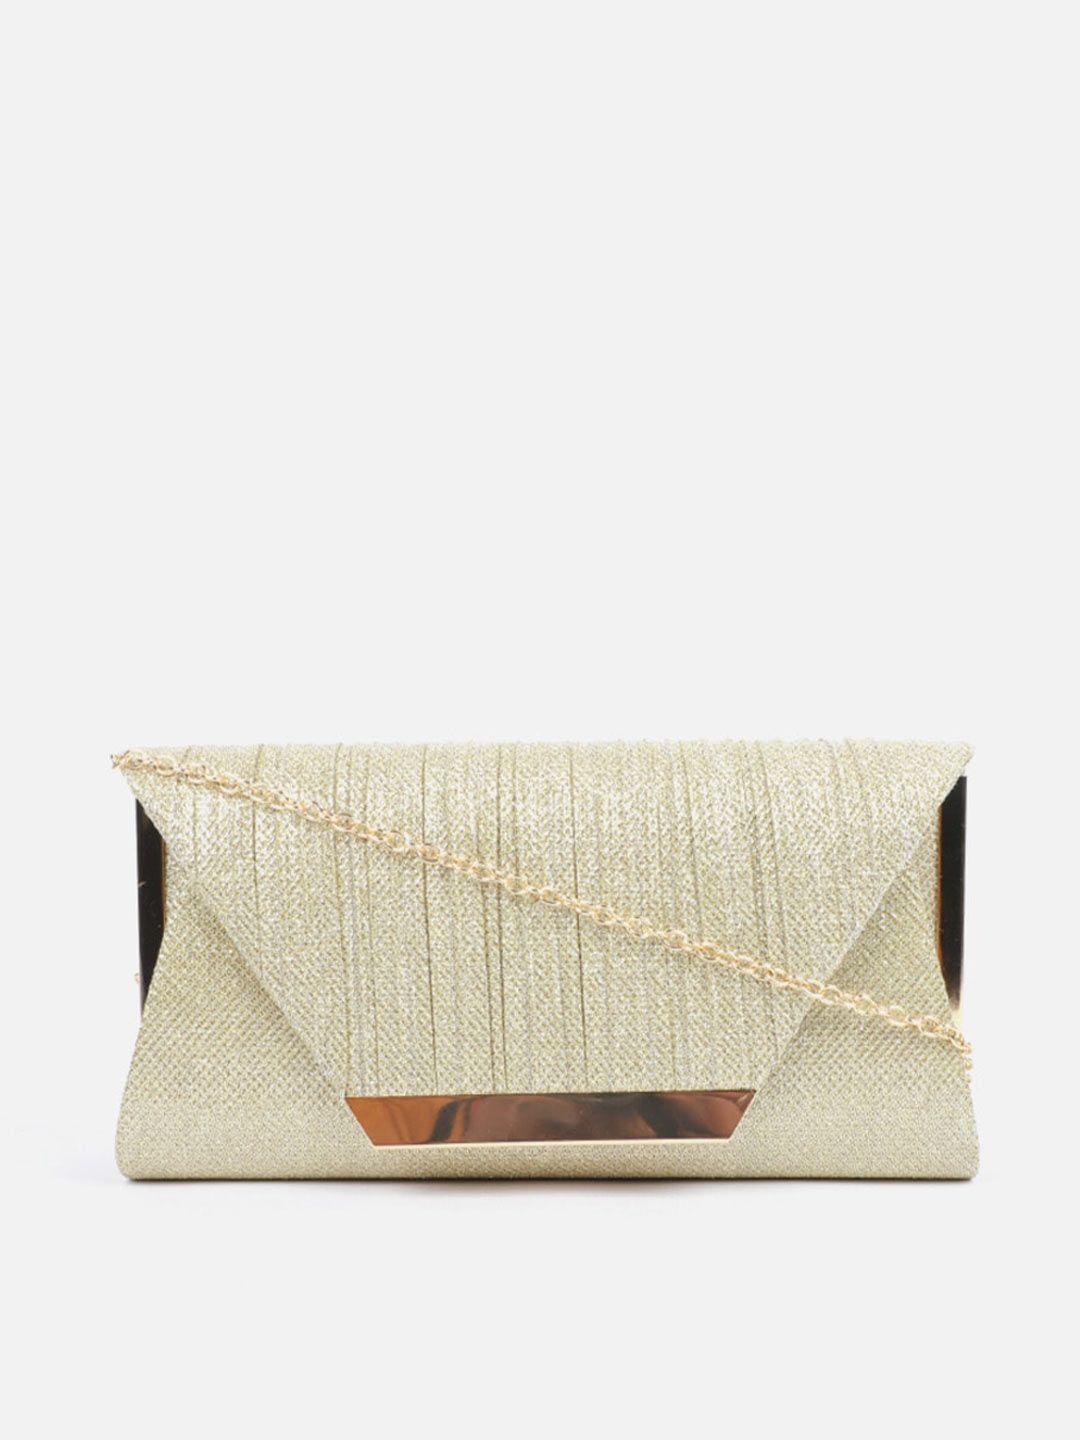 carlton-london-textured-purse-clutch